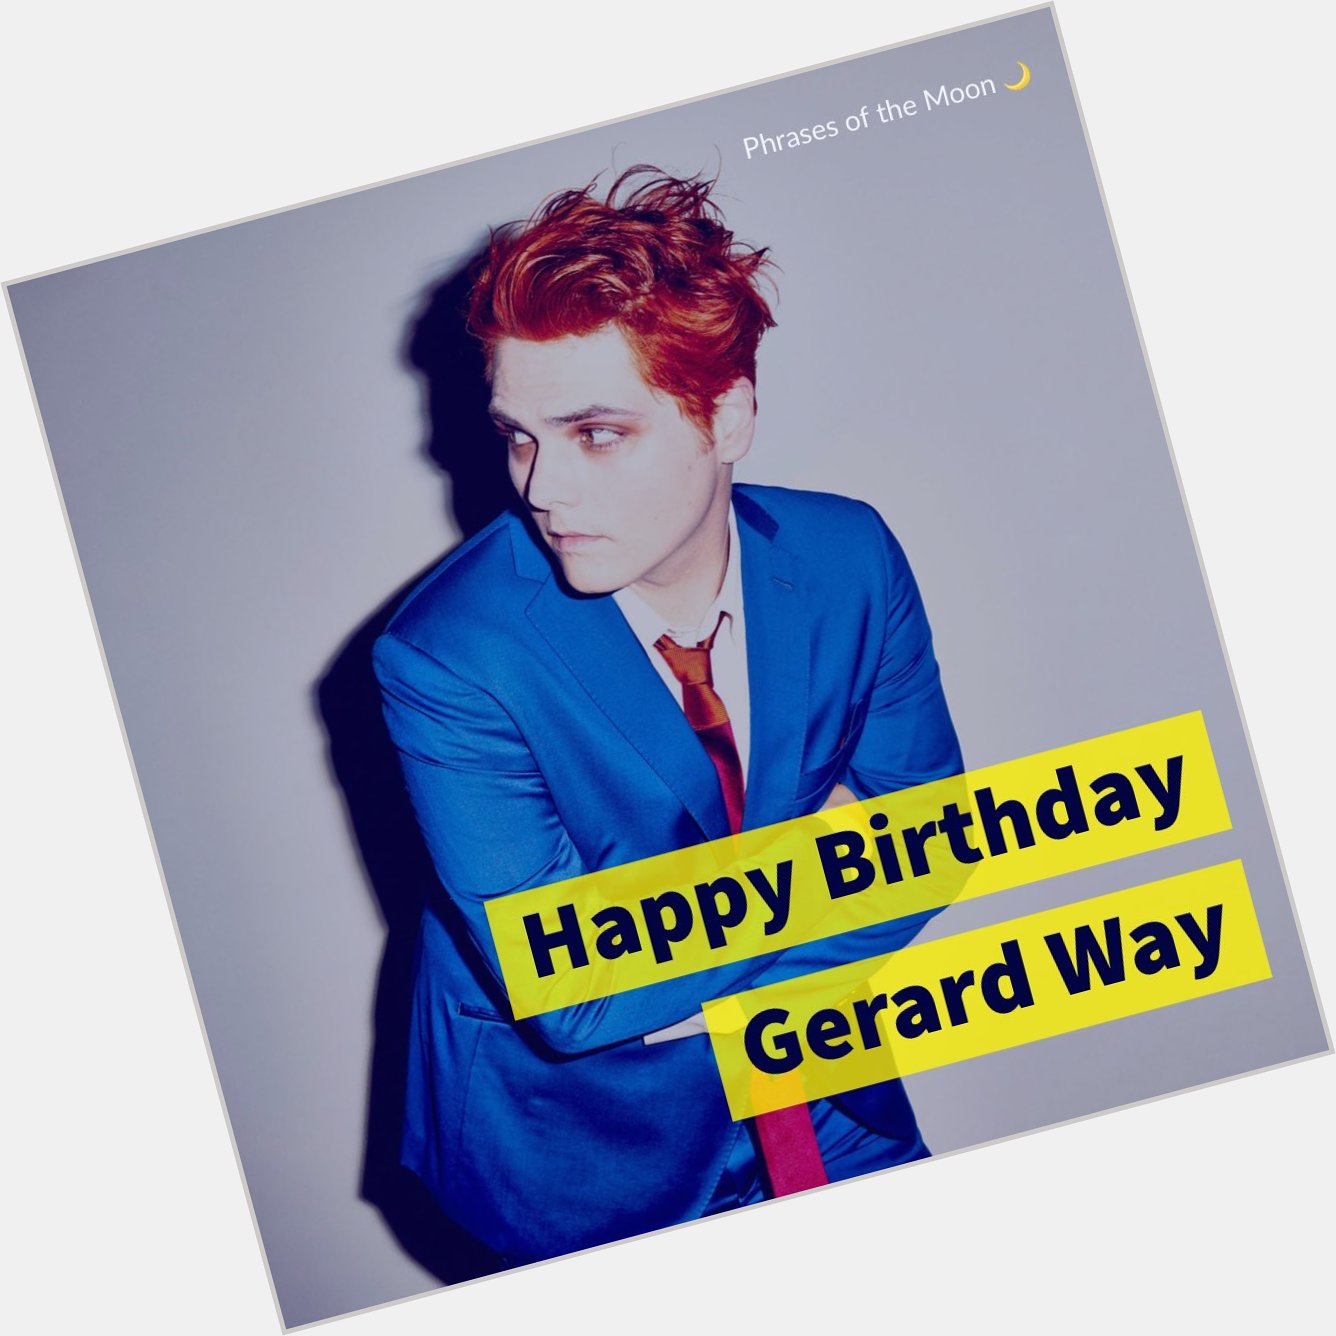 Happy Birthday Gerard Way                